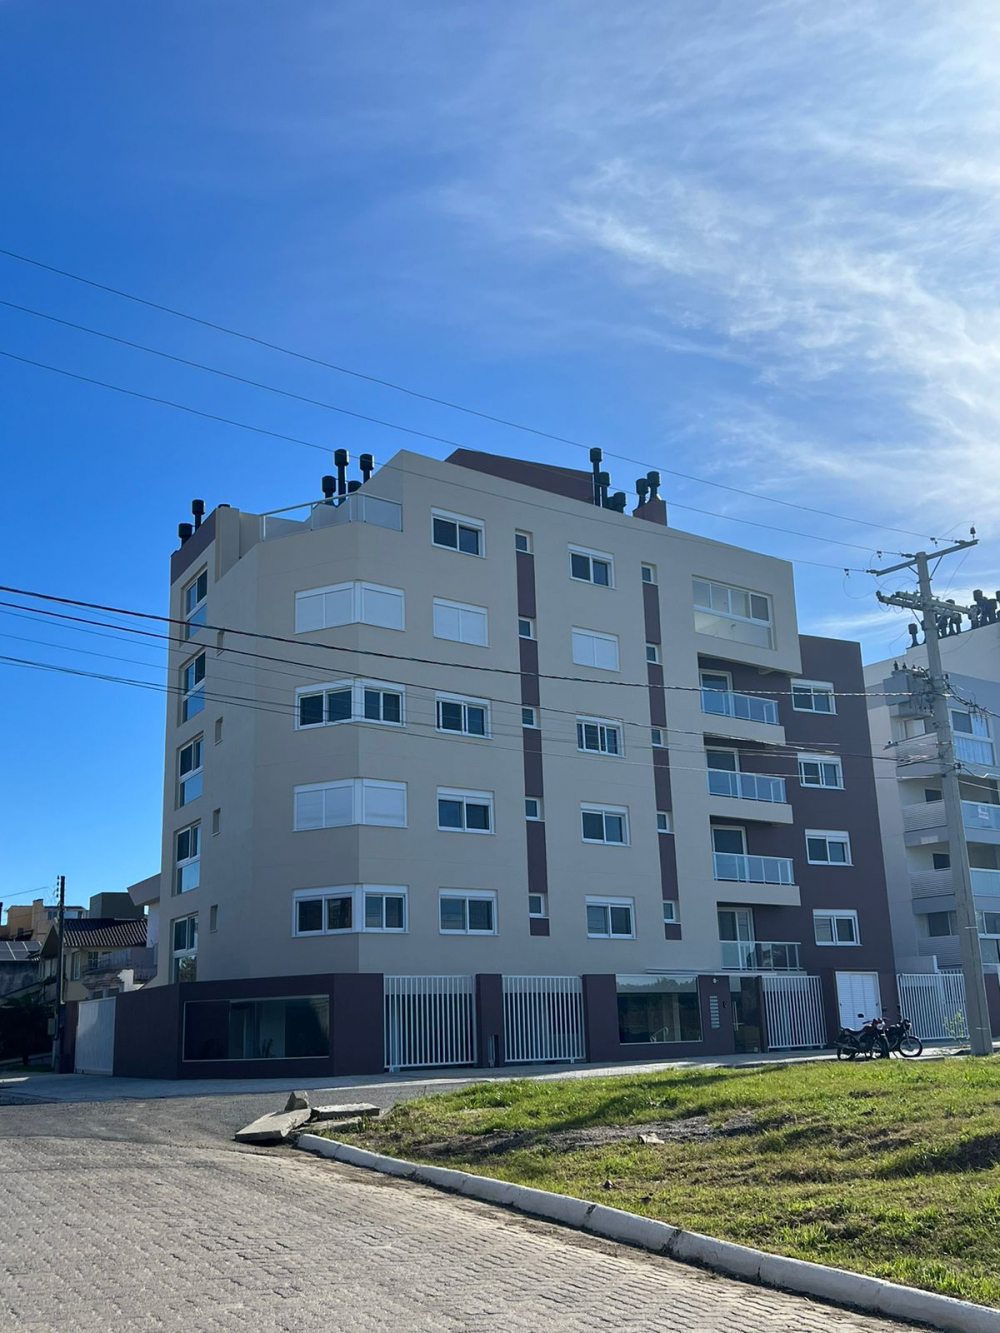 Apartamento, Zona Norte, Pelotas/RS